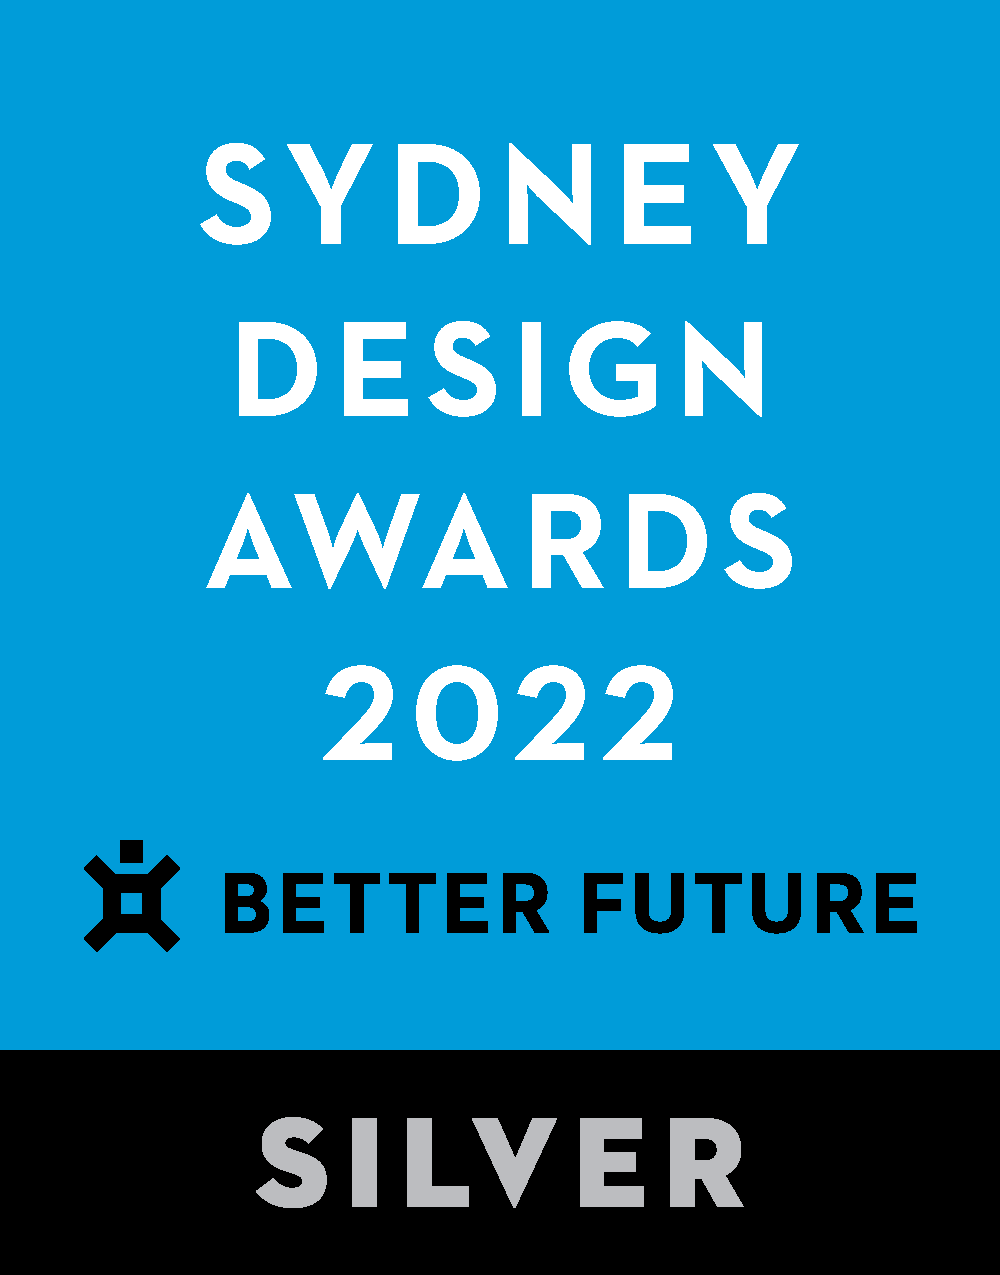 Melbourne Design Awards 2022 